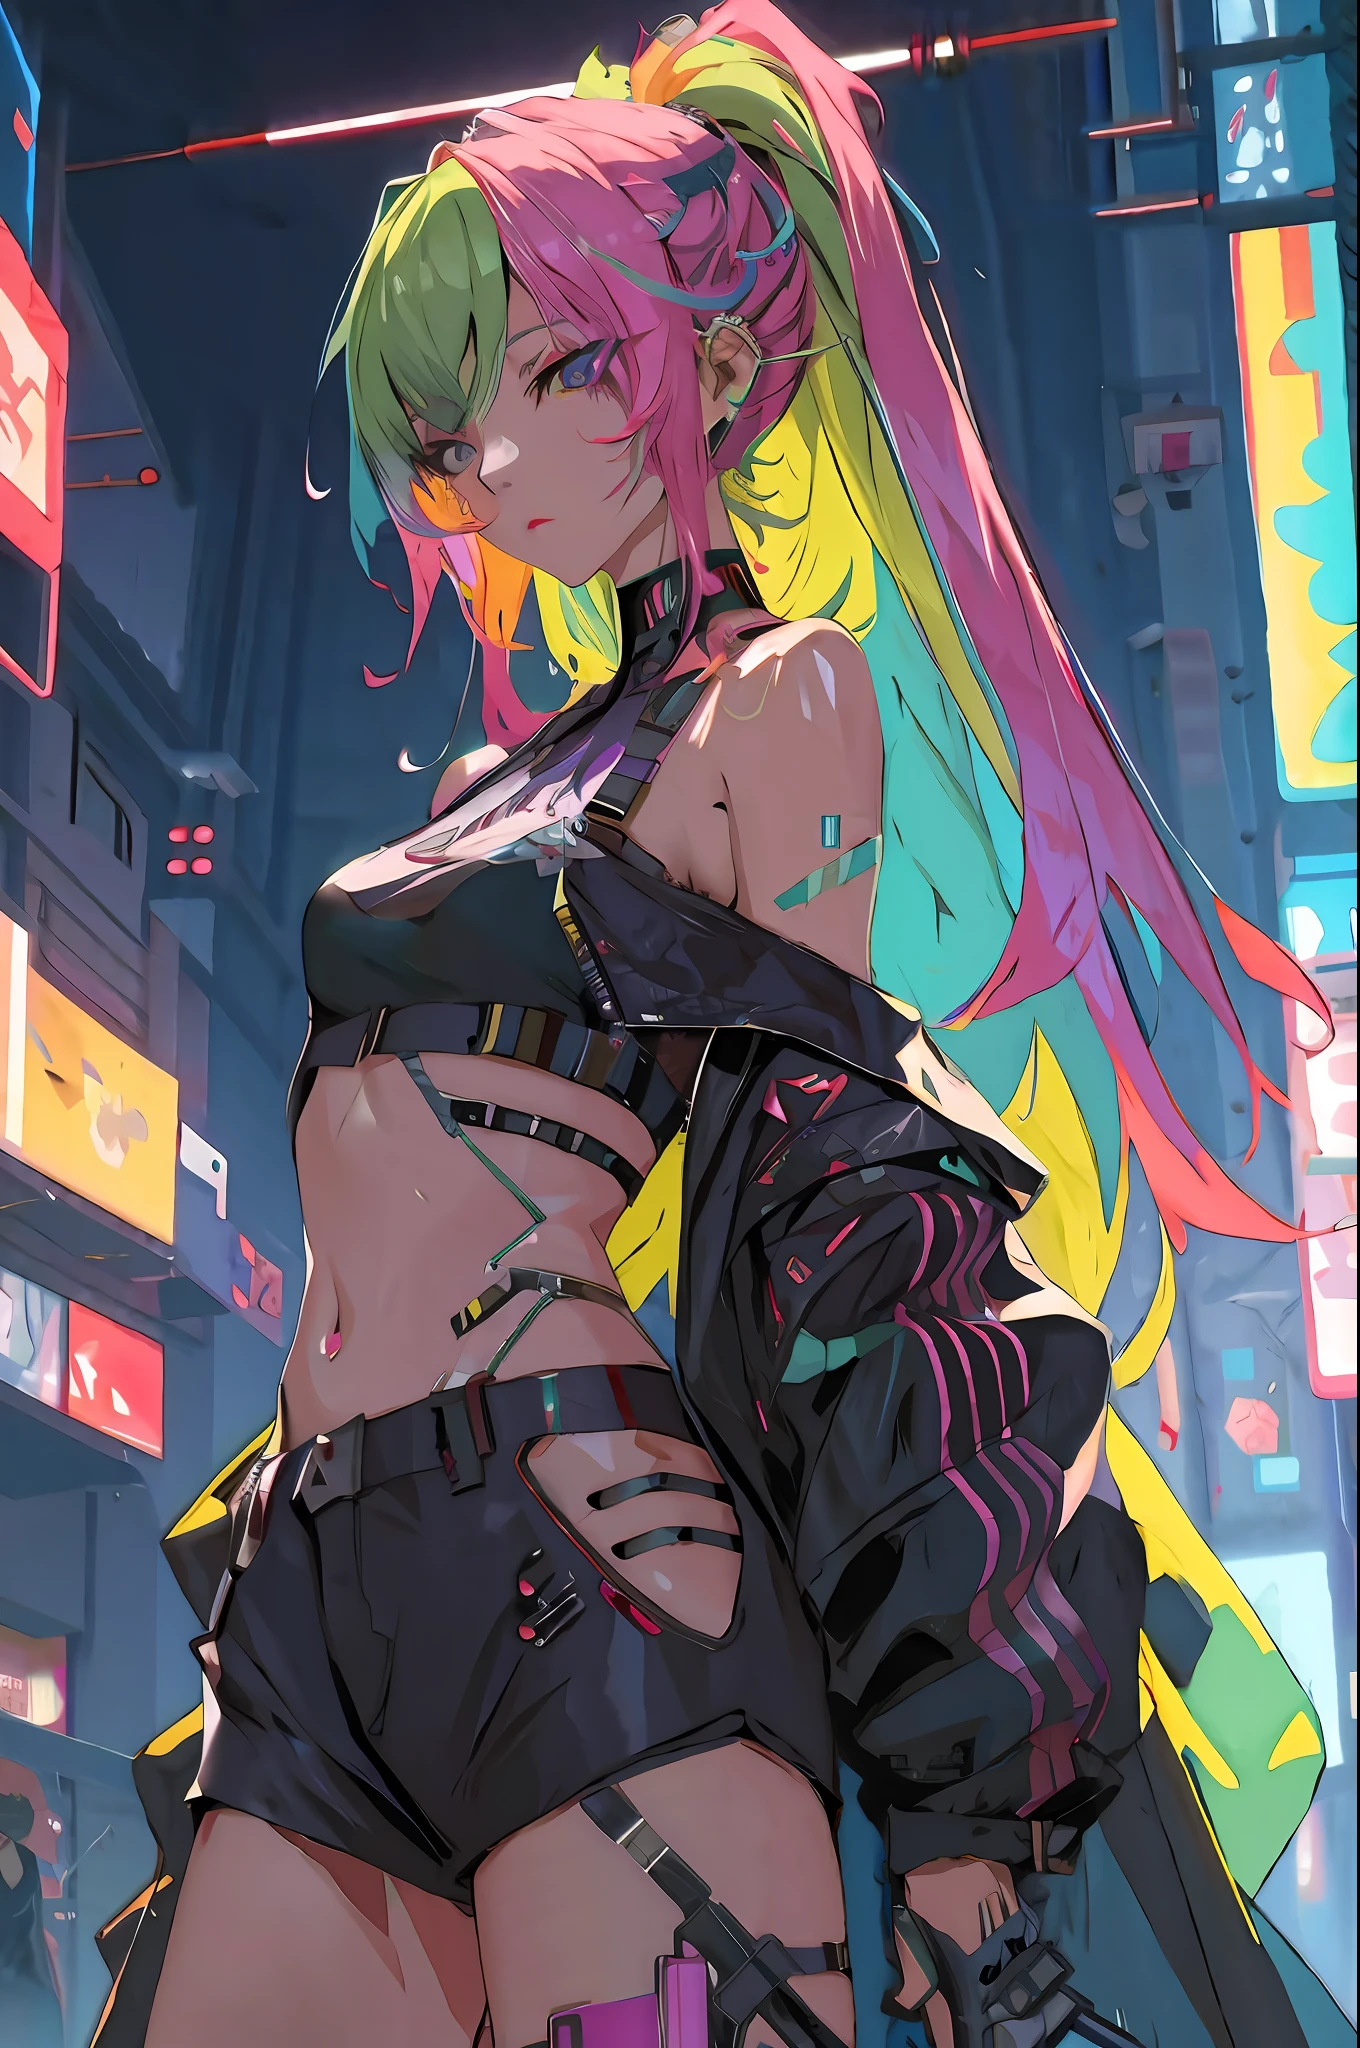 Anime-Mädchen mit rosa Haaren und schwarzem Kostüm in der Stadt, cyberpunk anime girl, anime cyberpunk art, Digital cyberpunk anime art, digitl cyberpunk - anime art, cyberpunk anime art, female cyberpunk anime girl, Cyberpunk art style, bestes Anime 4k Konachan-Hintergrundbild, Anime cyberpunk moderno, Cyberpunk vibe, Stil von Anime4 K, cyberpunk atmosphere, bright cyberpunk glow, anime cyberpunk